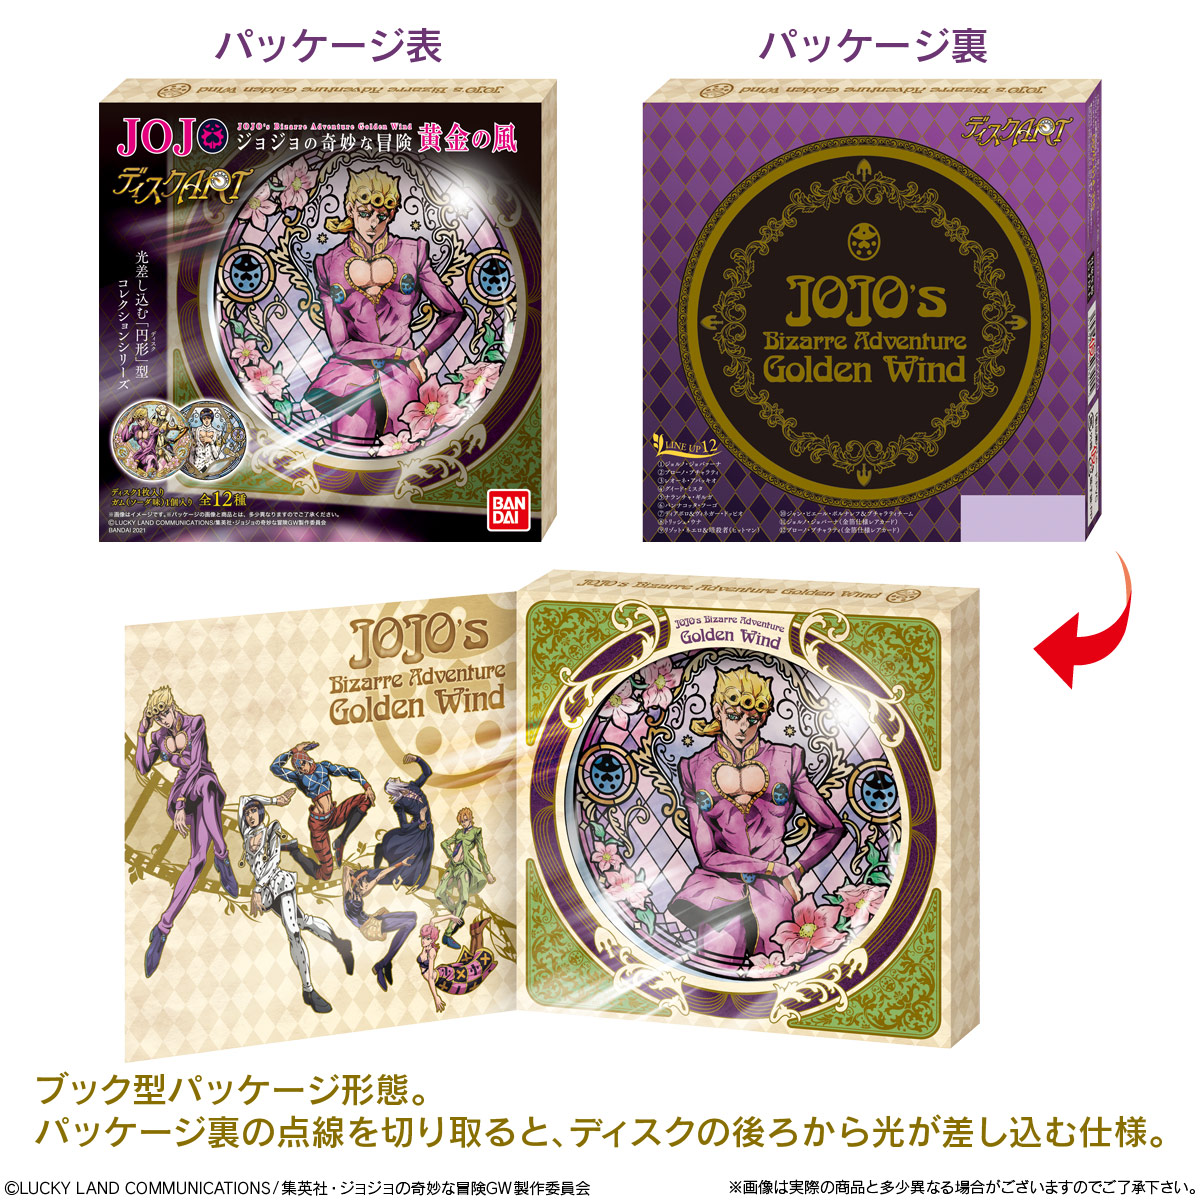 【食玩】ジョジョ『ディスクART ジョジョの奇妙な冒険 黄金の風』12個入りBOX-002